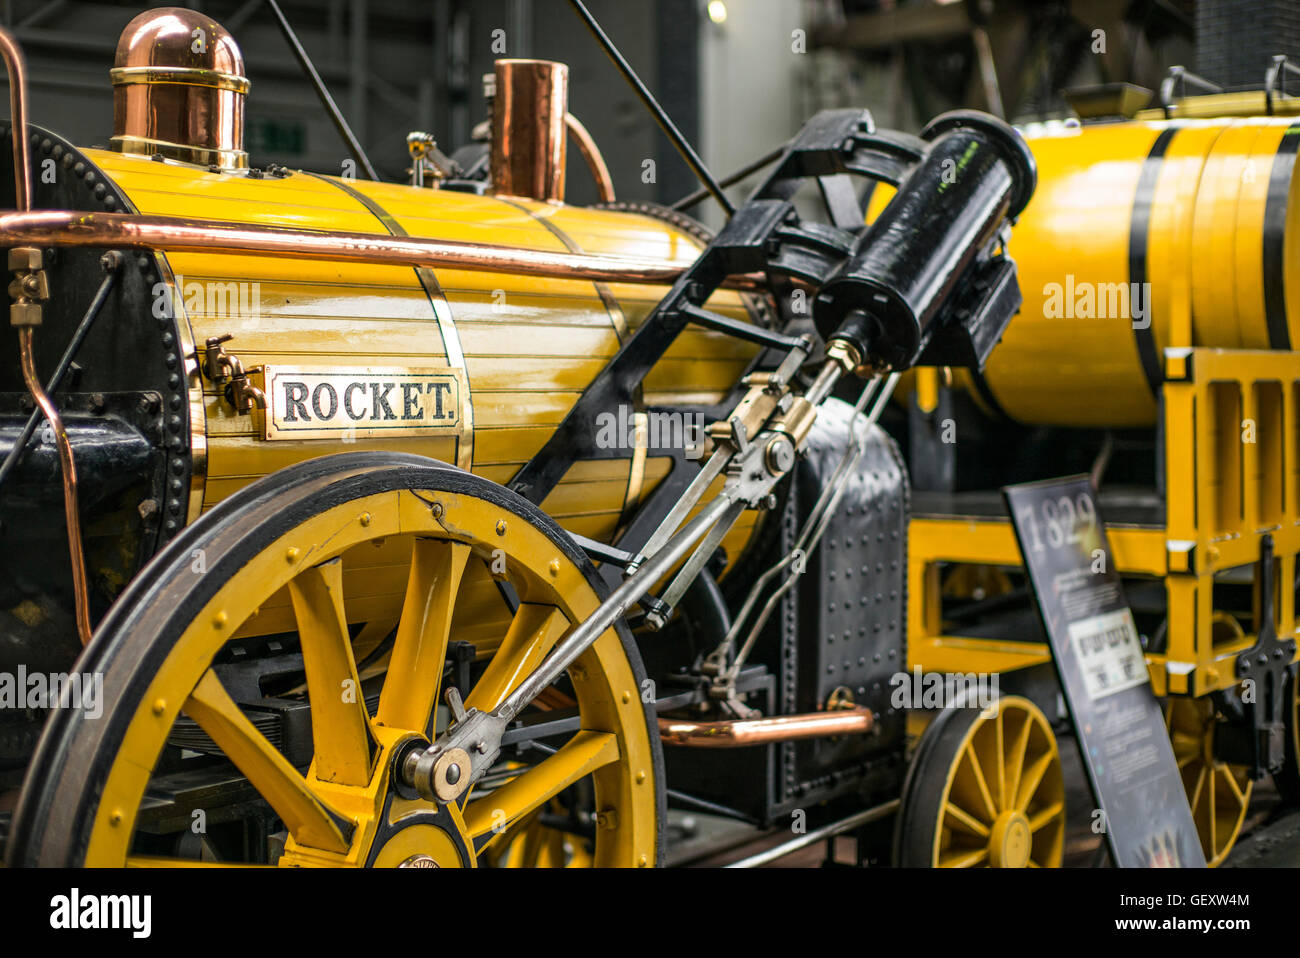 Stephenson's Rocket locomotive vapeur exposée au Musée National du chemin de fer dans la région de New York. Banque D'Images